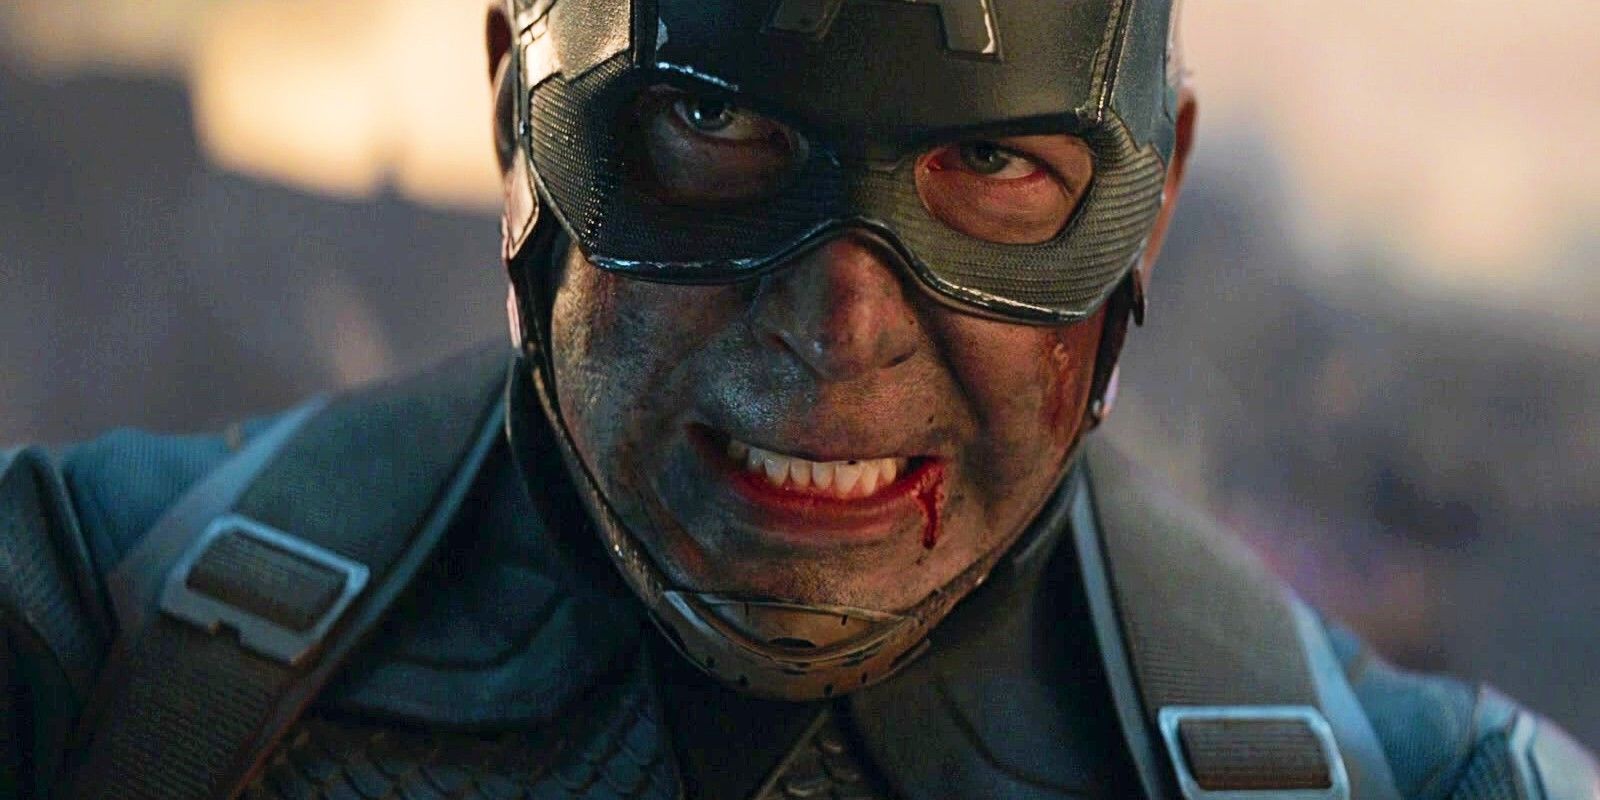 El Capitán América de Chris Evans se enoja inusualmente en una escena inédita de Avengers Endgame